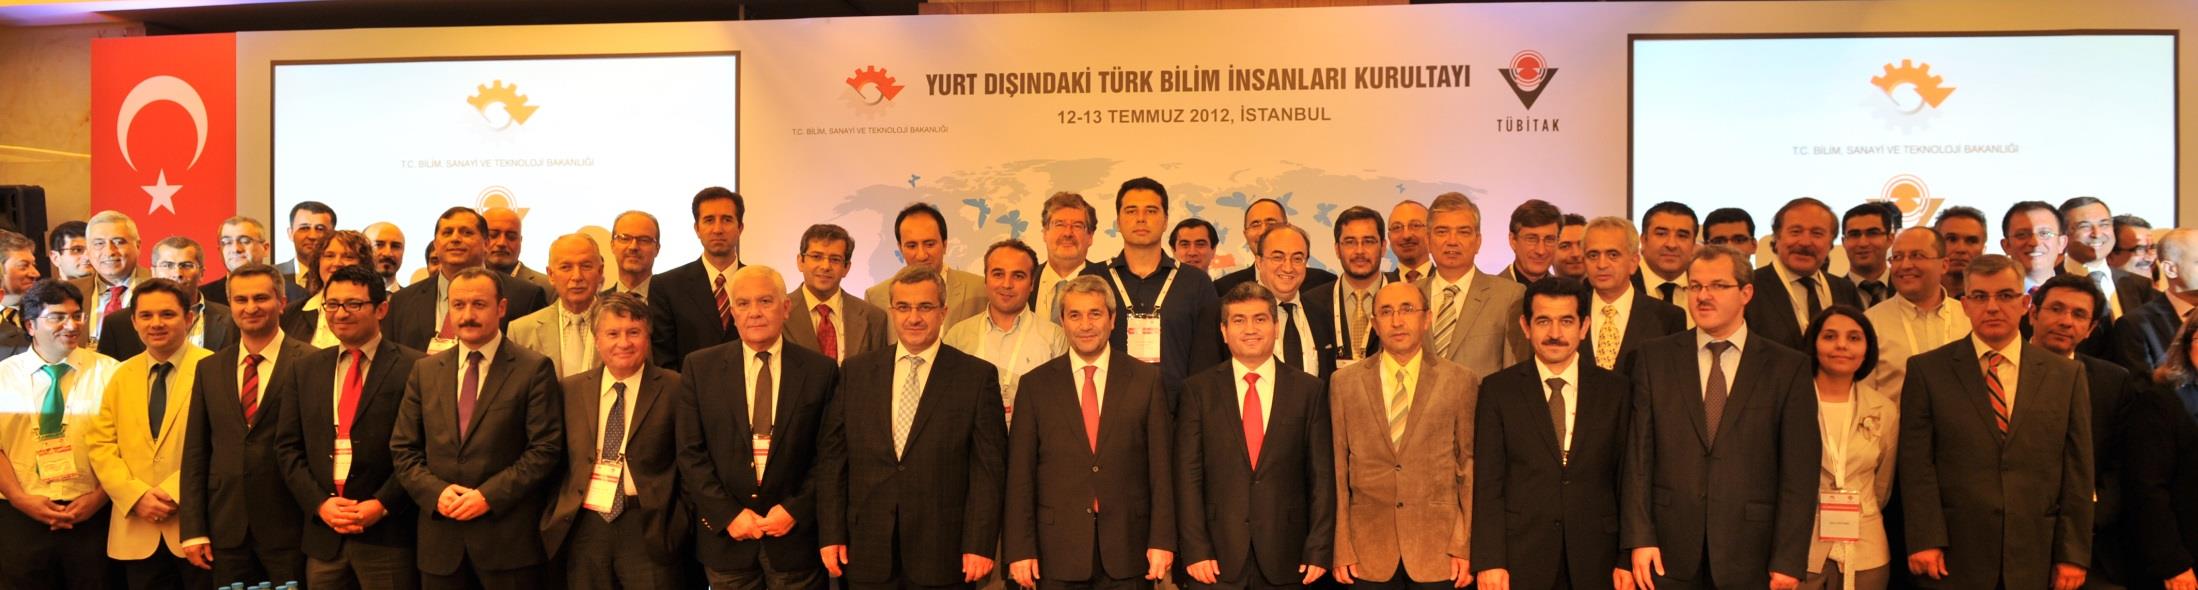 Yurt Dışındaki Türk Bilim İnsanları I.